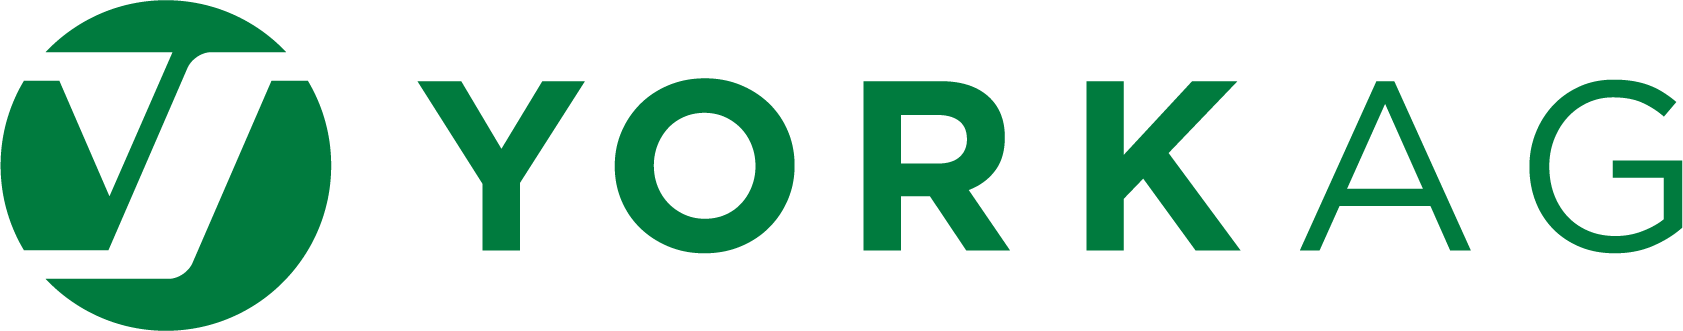 YorkAg logo-Green.png